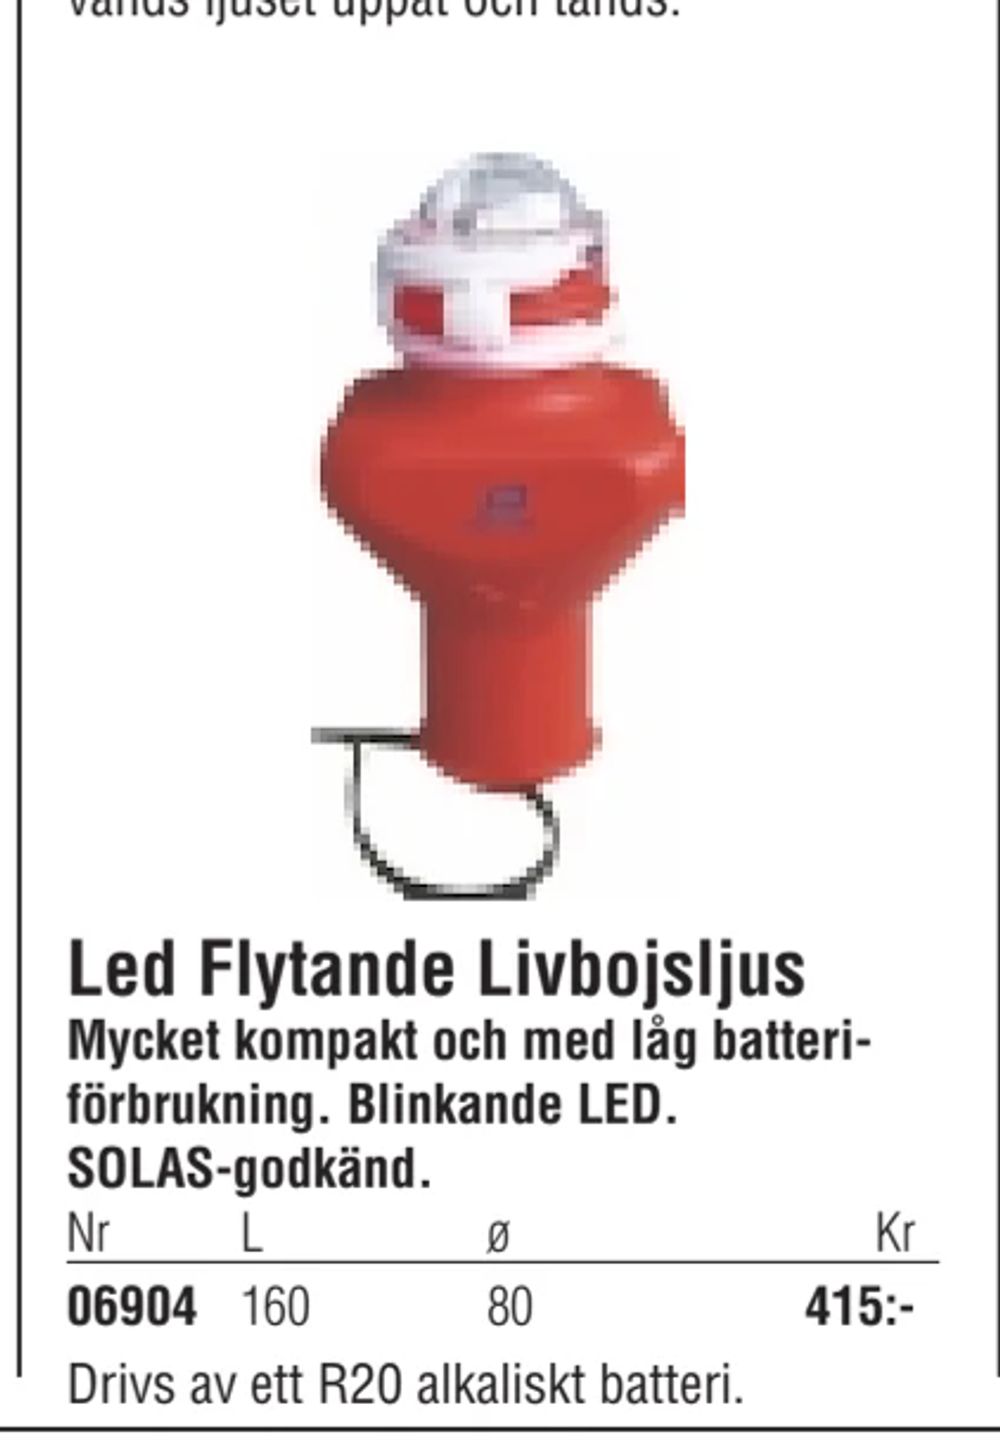 Erbjudanden på Led Flytande Livbojsljus från Erlandsons Brygga för 415 kr